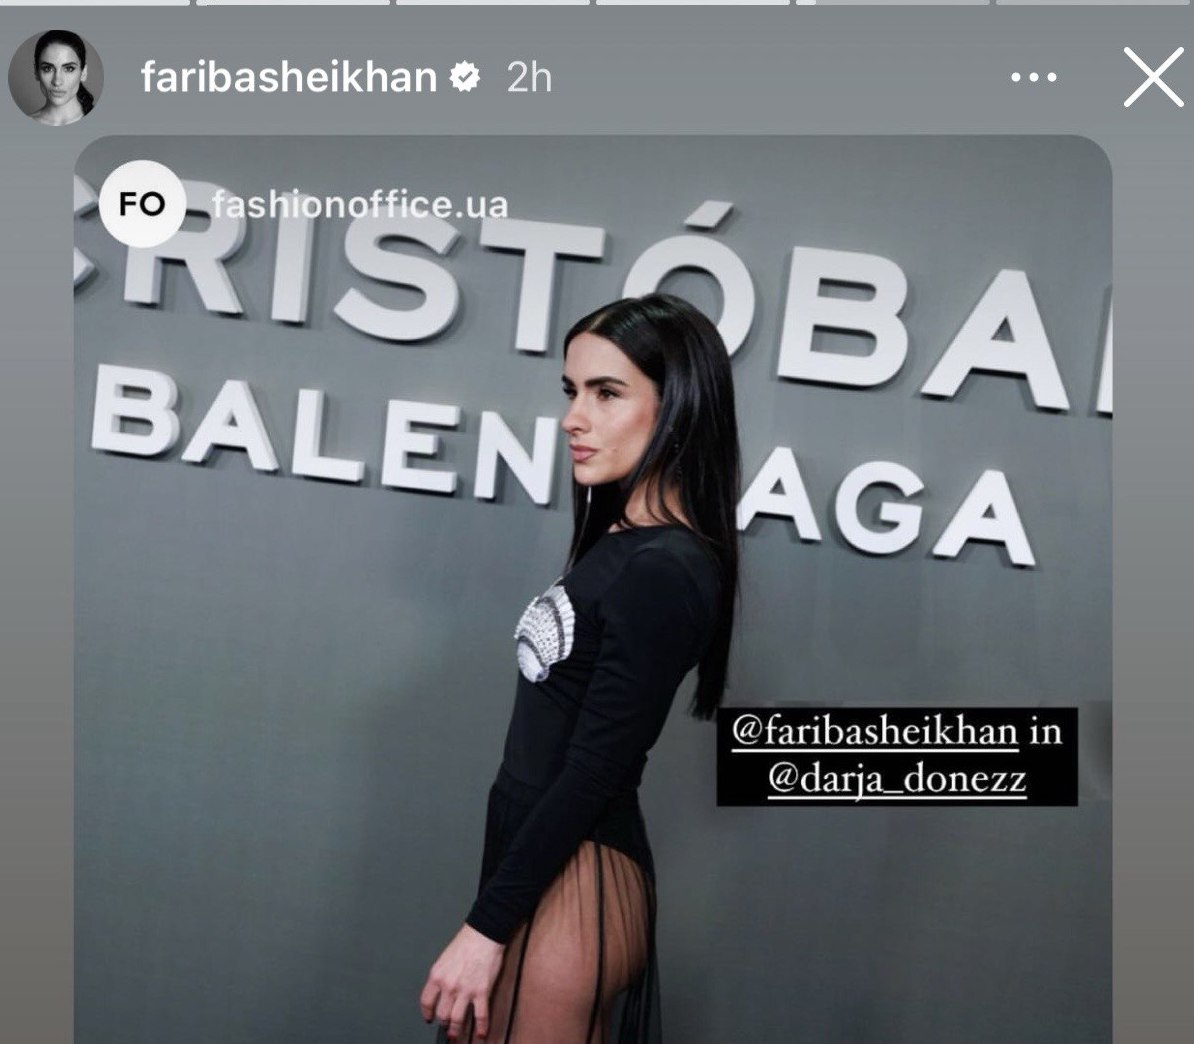 Украинский бренд Darja Donezz получил мировое признание, создав смелый образ испанской актрисы Фарибы Шейхан. 